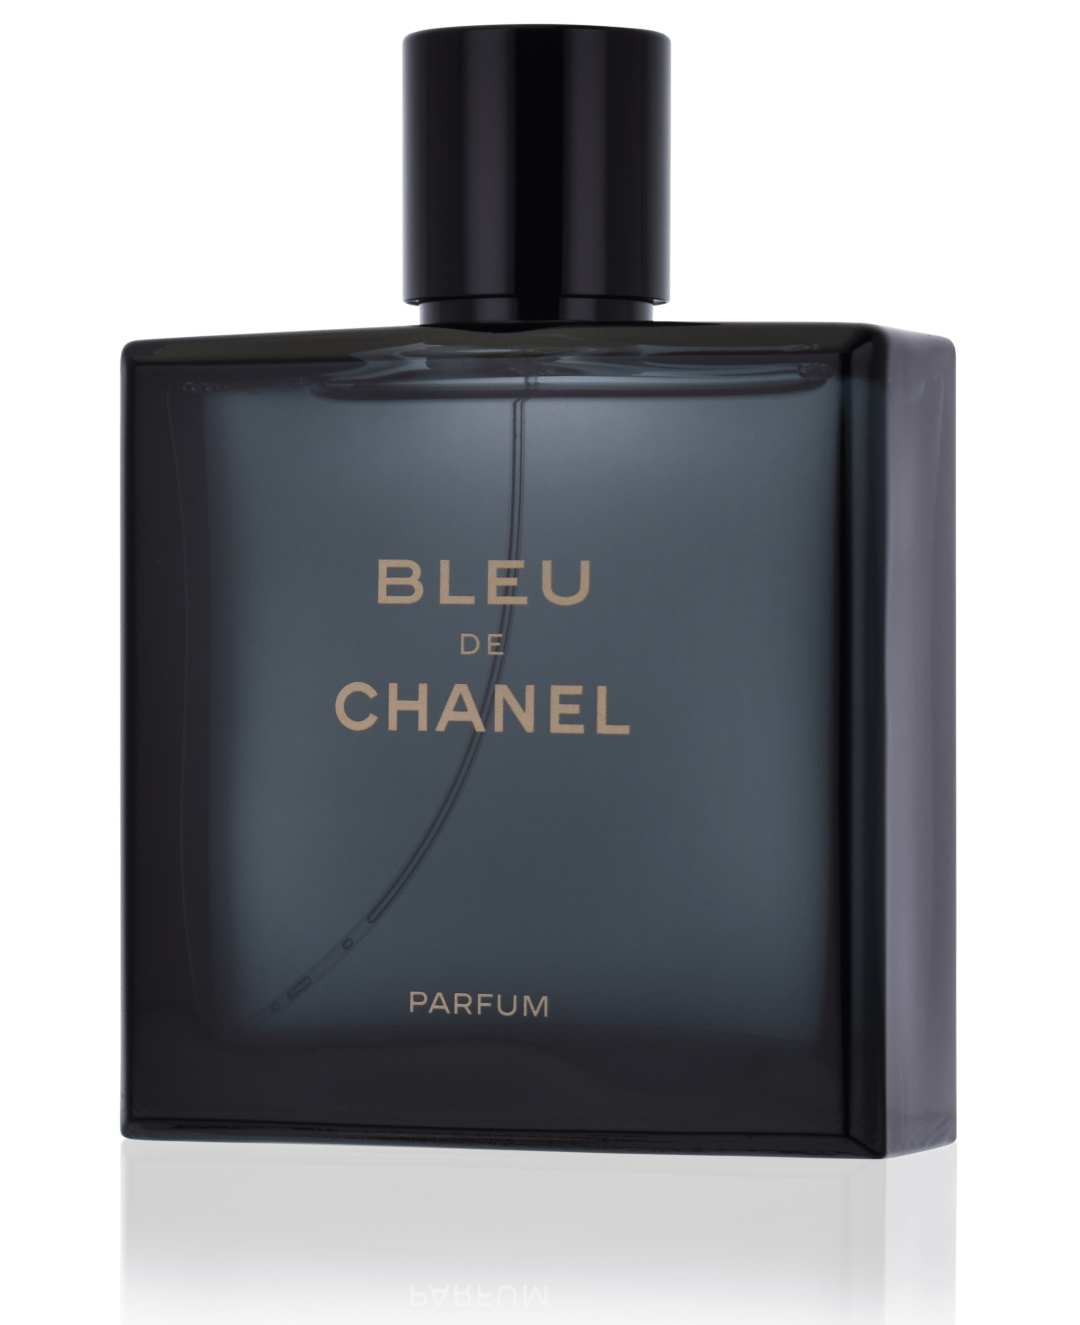 Chanel Bleu de Chanel Parfum pour Homme 50 ml unboxed